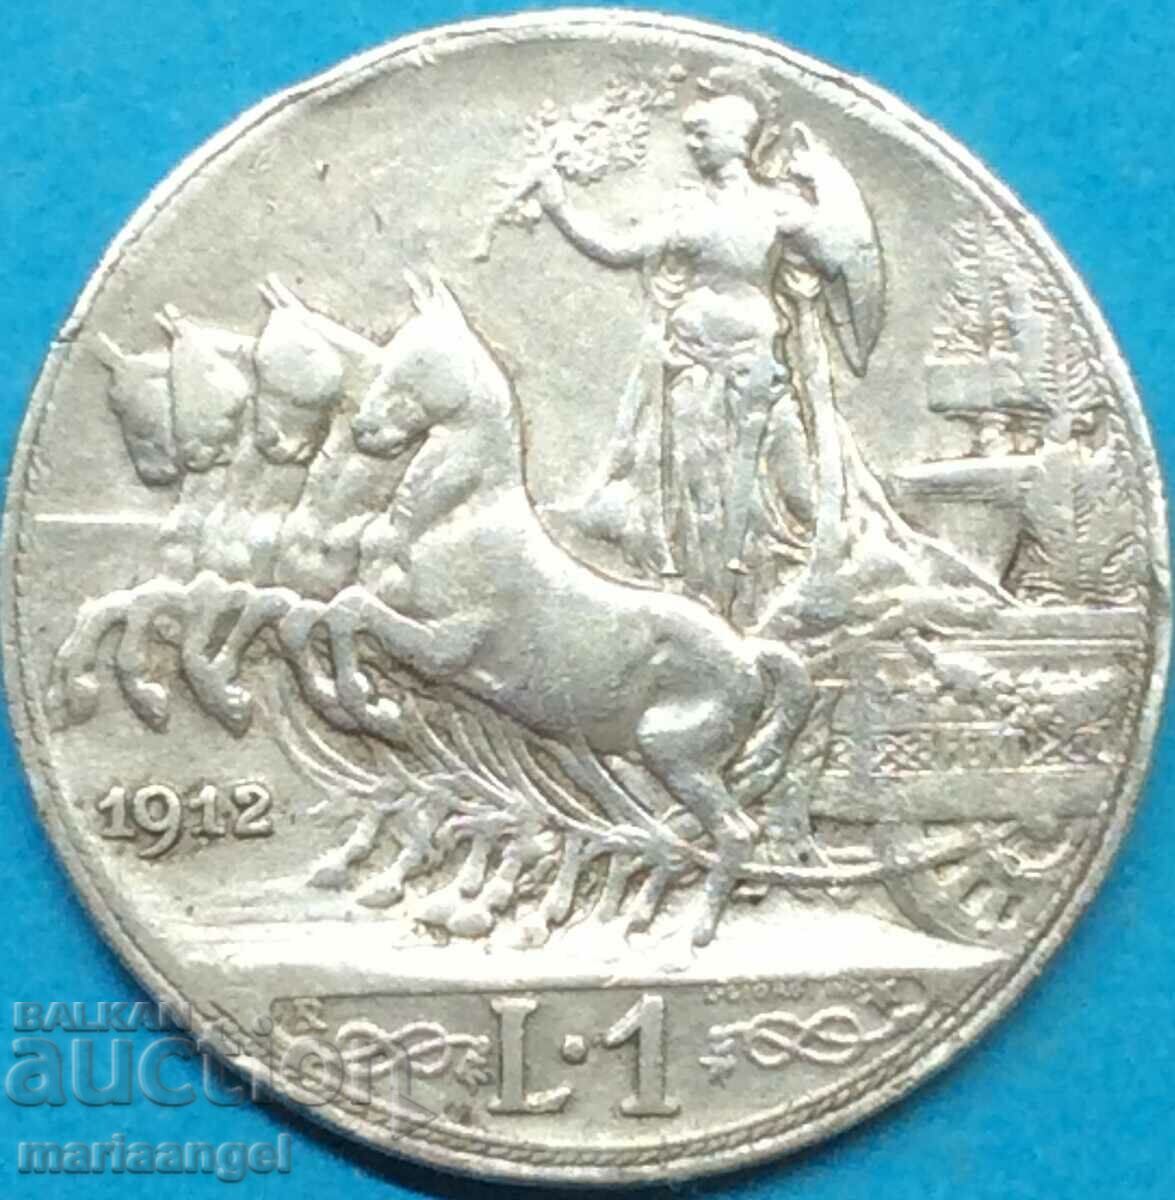 1 lira 1912 Italy silver